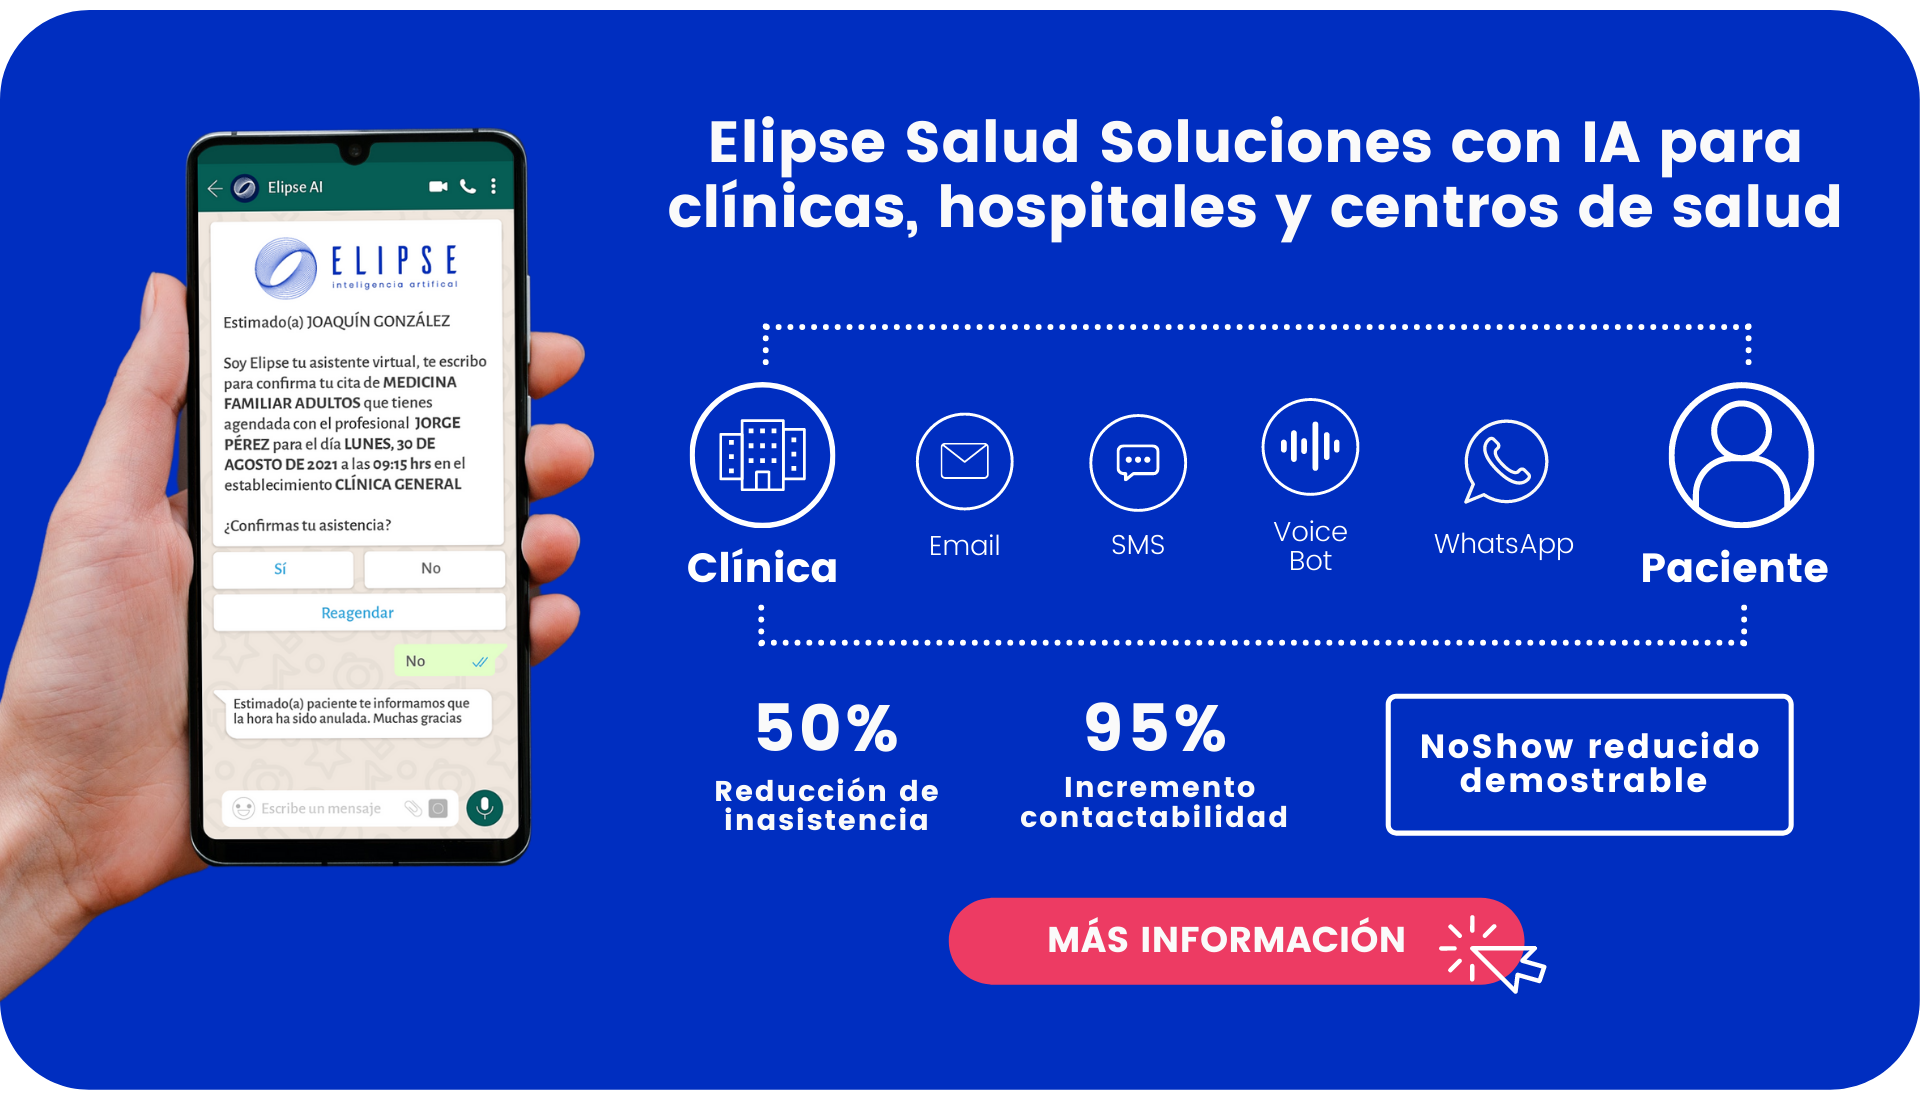 Elipse Salud Soluciones con IA para clínicas, hospitales y centros de salud